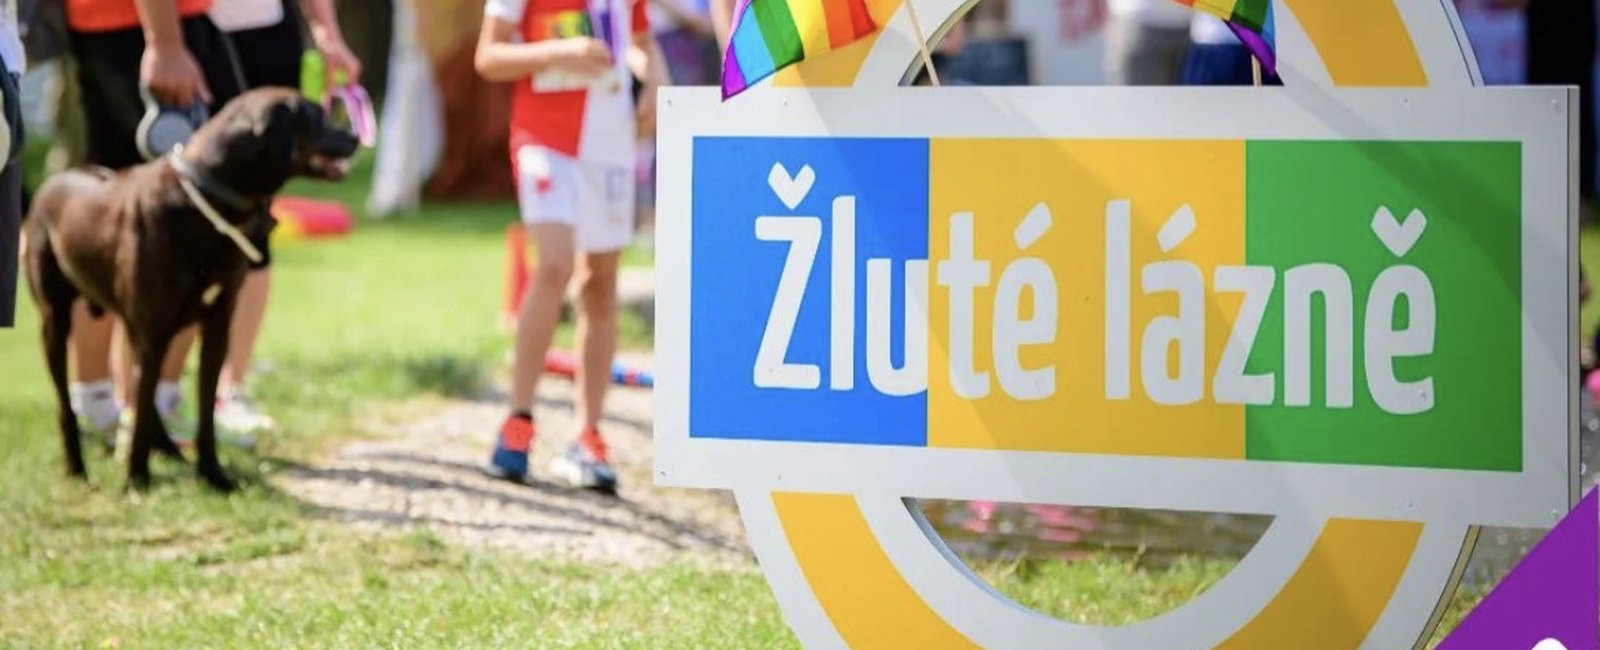 Fun&Run - Charitativní bìh proti homofobii - LGBTQ+ - Gay, lesbická, bisexuální, transgender a blízká témata v Èeské republice.